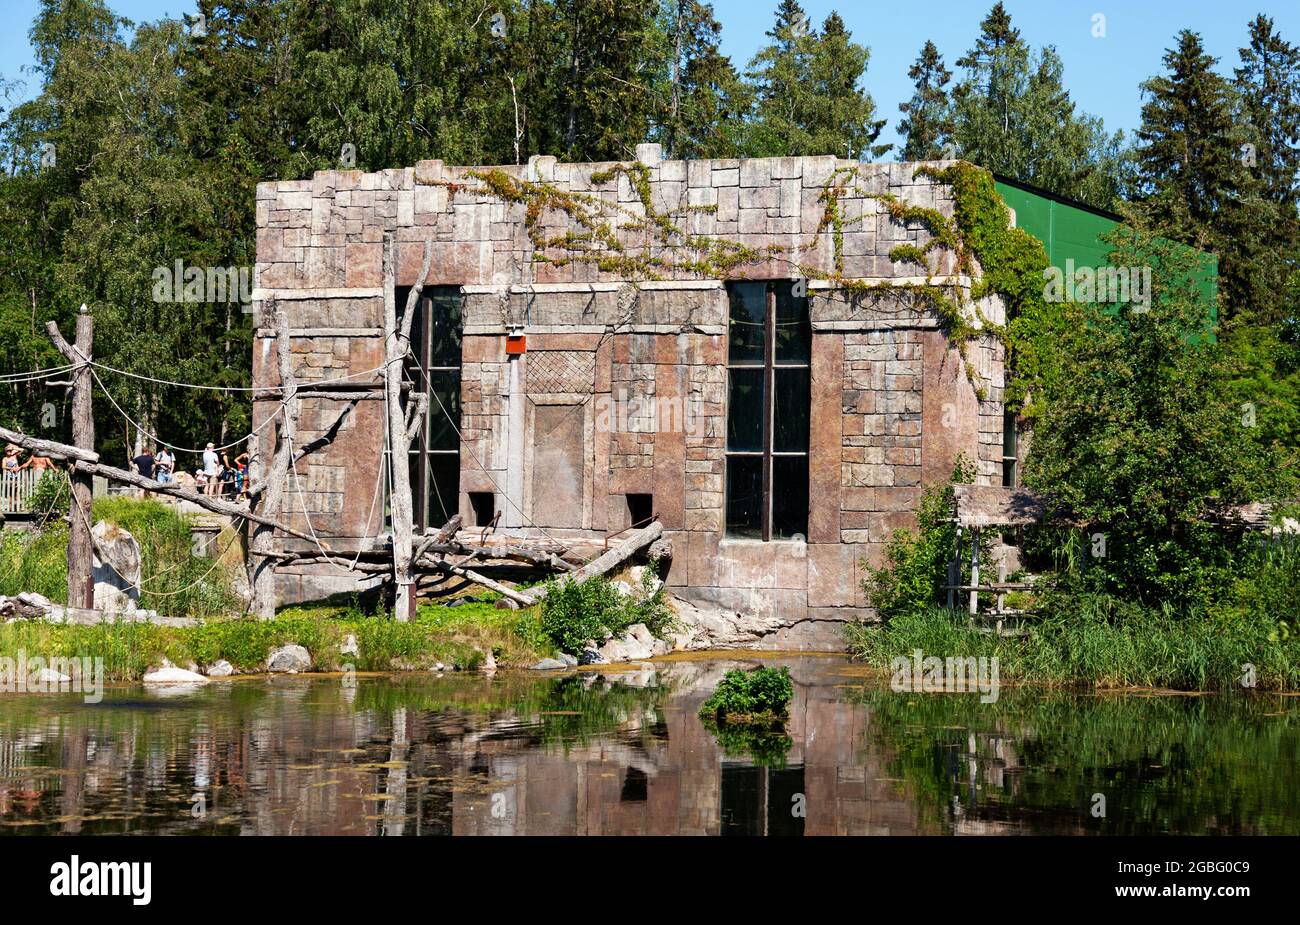 Furuvik, Norrland Svezia - 12 giugno 2021: Una casa nella giungla per scimmie con acqua tutto intorno Foto Stock